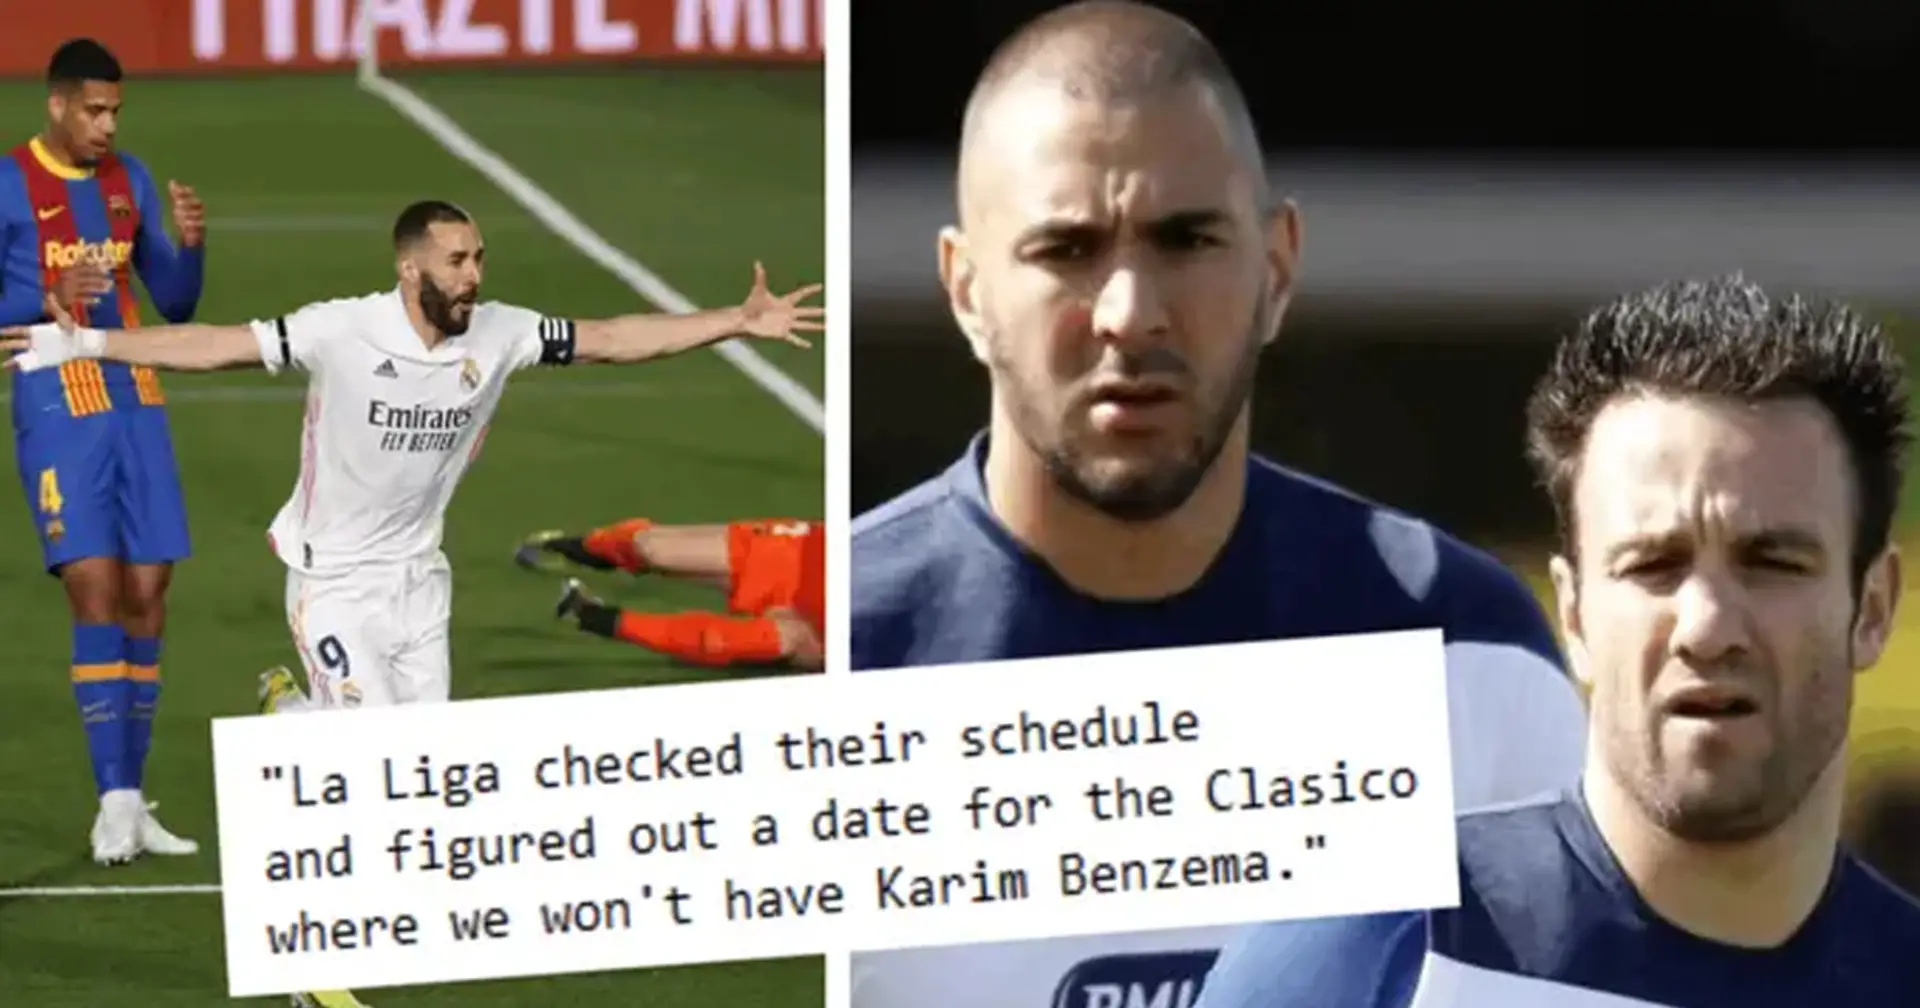 ¿Se perderá Karim Benzema el Clásico debido al juicio por el caso Valbuena? Tú preguntaste, nosotros respondimos